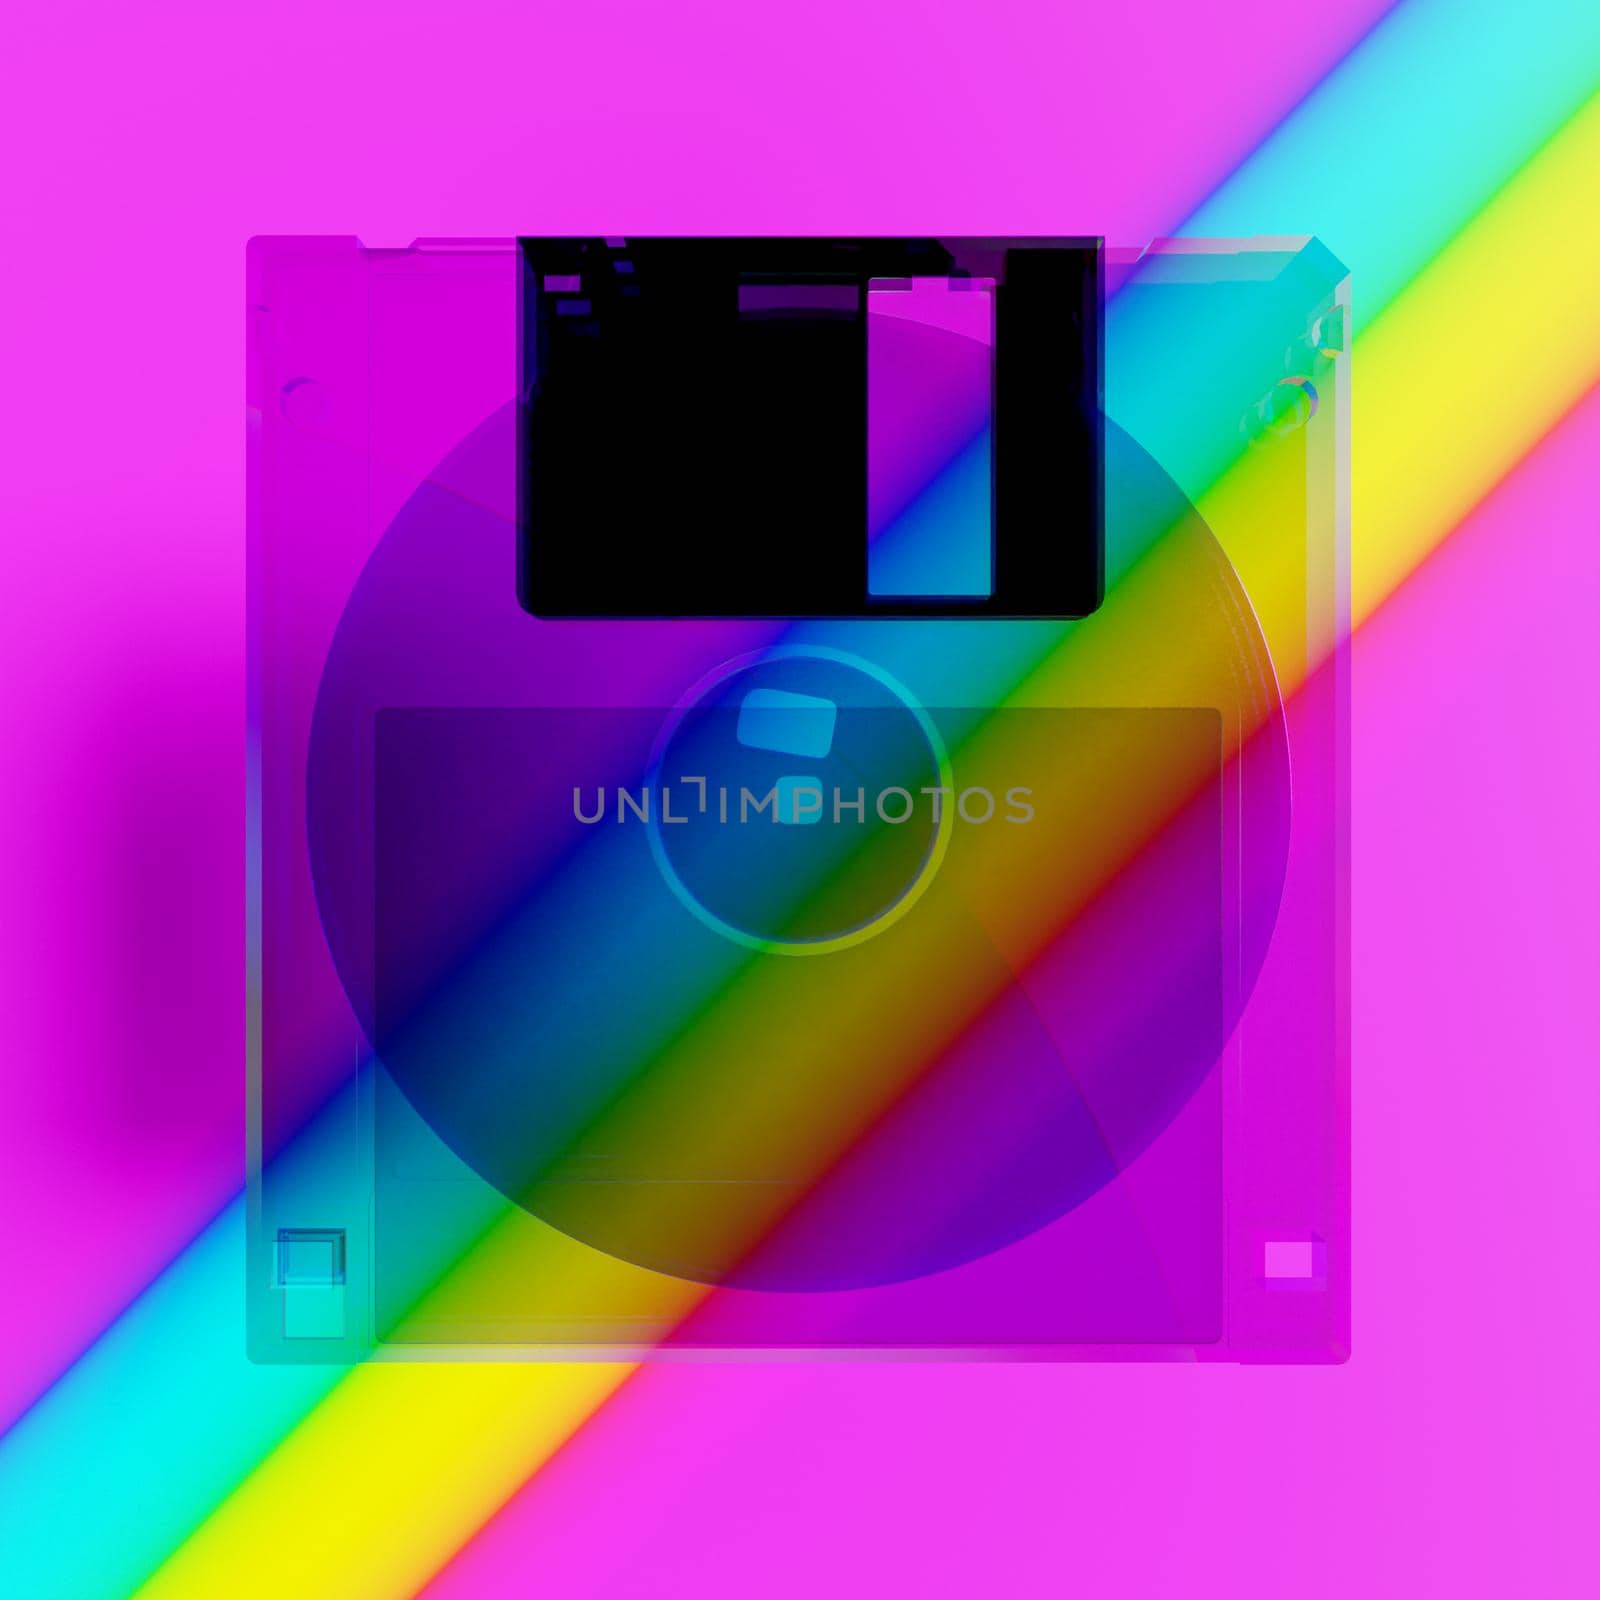 transparent old floppy disk on a full color background. 3d rendering